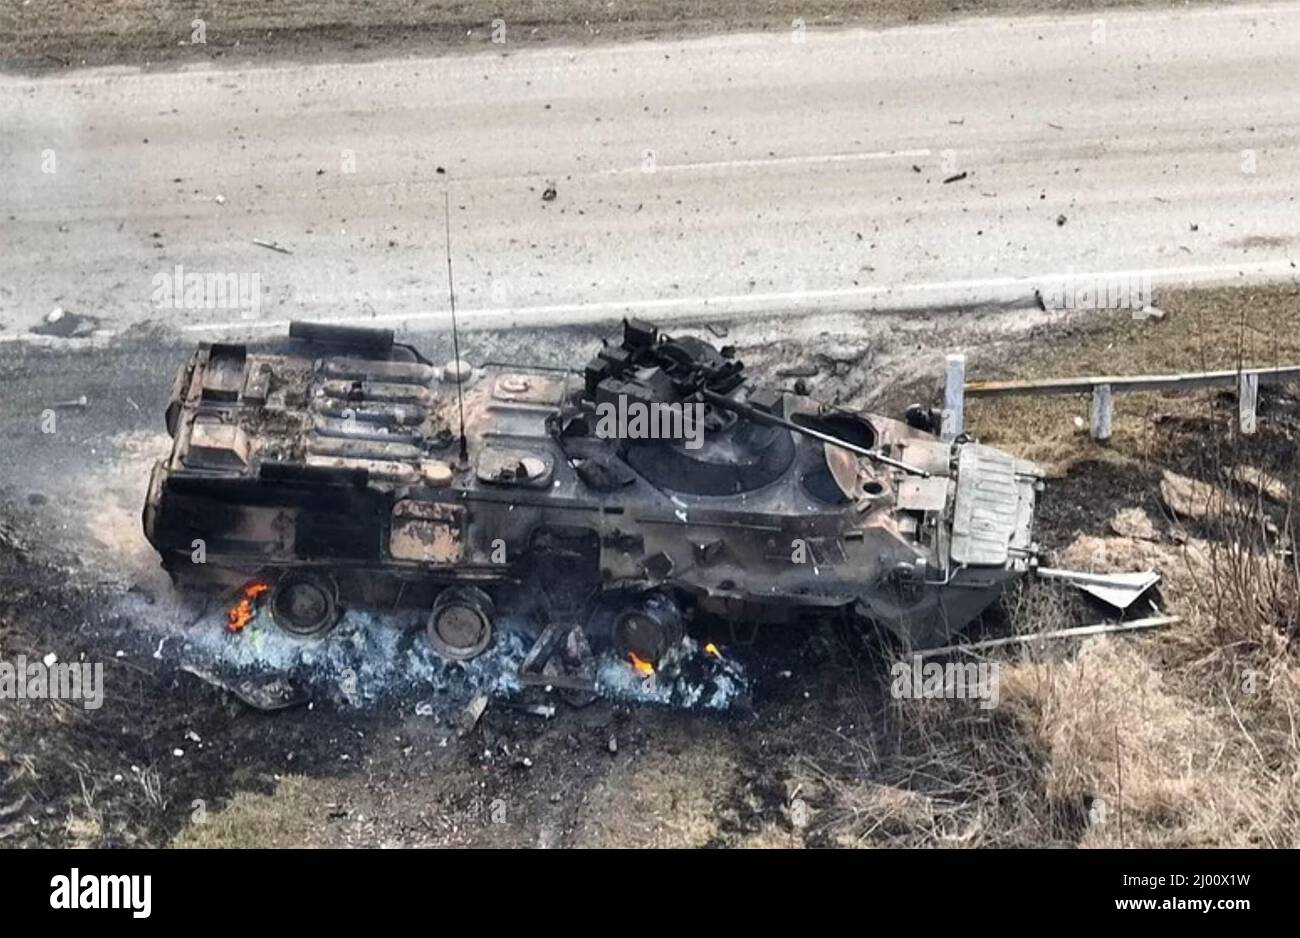 UKRAINISCHER KRIEG Russischer gepanzerter Personalträger von ukrainischen Spezialeinheiten zerstört, März 2022. Stockfoto